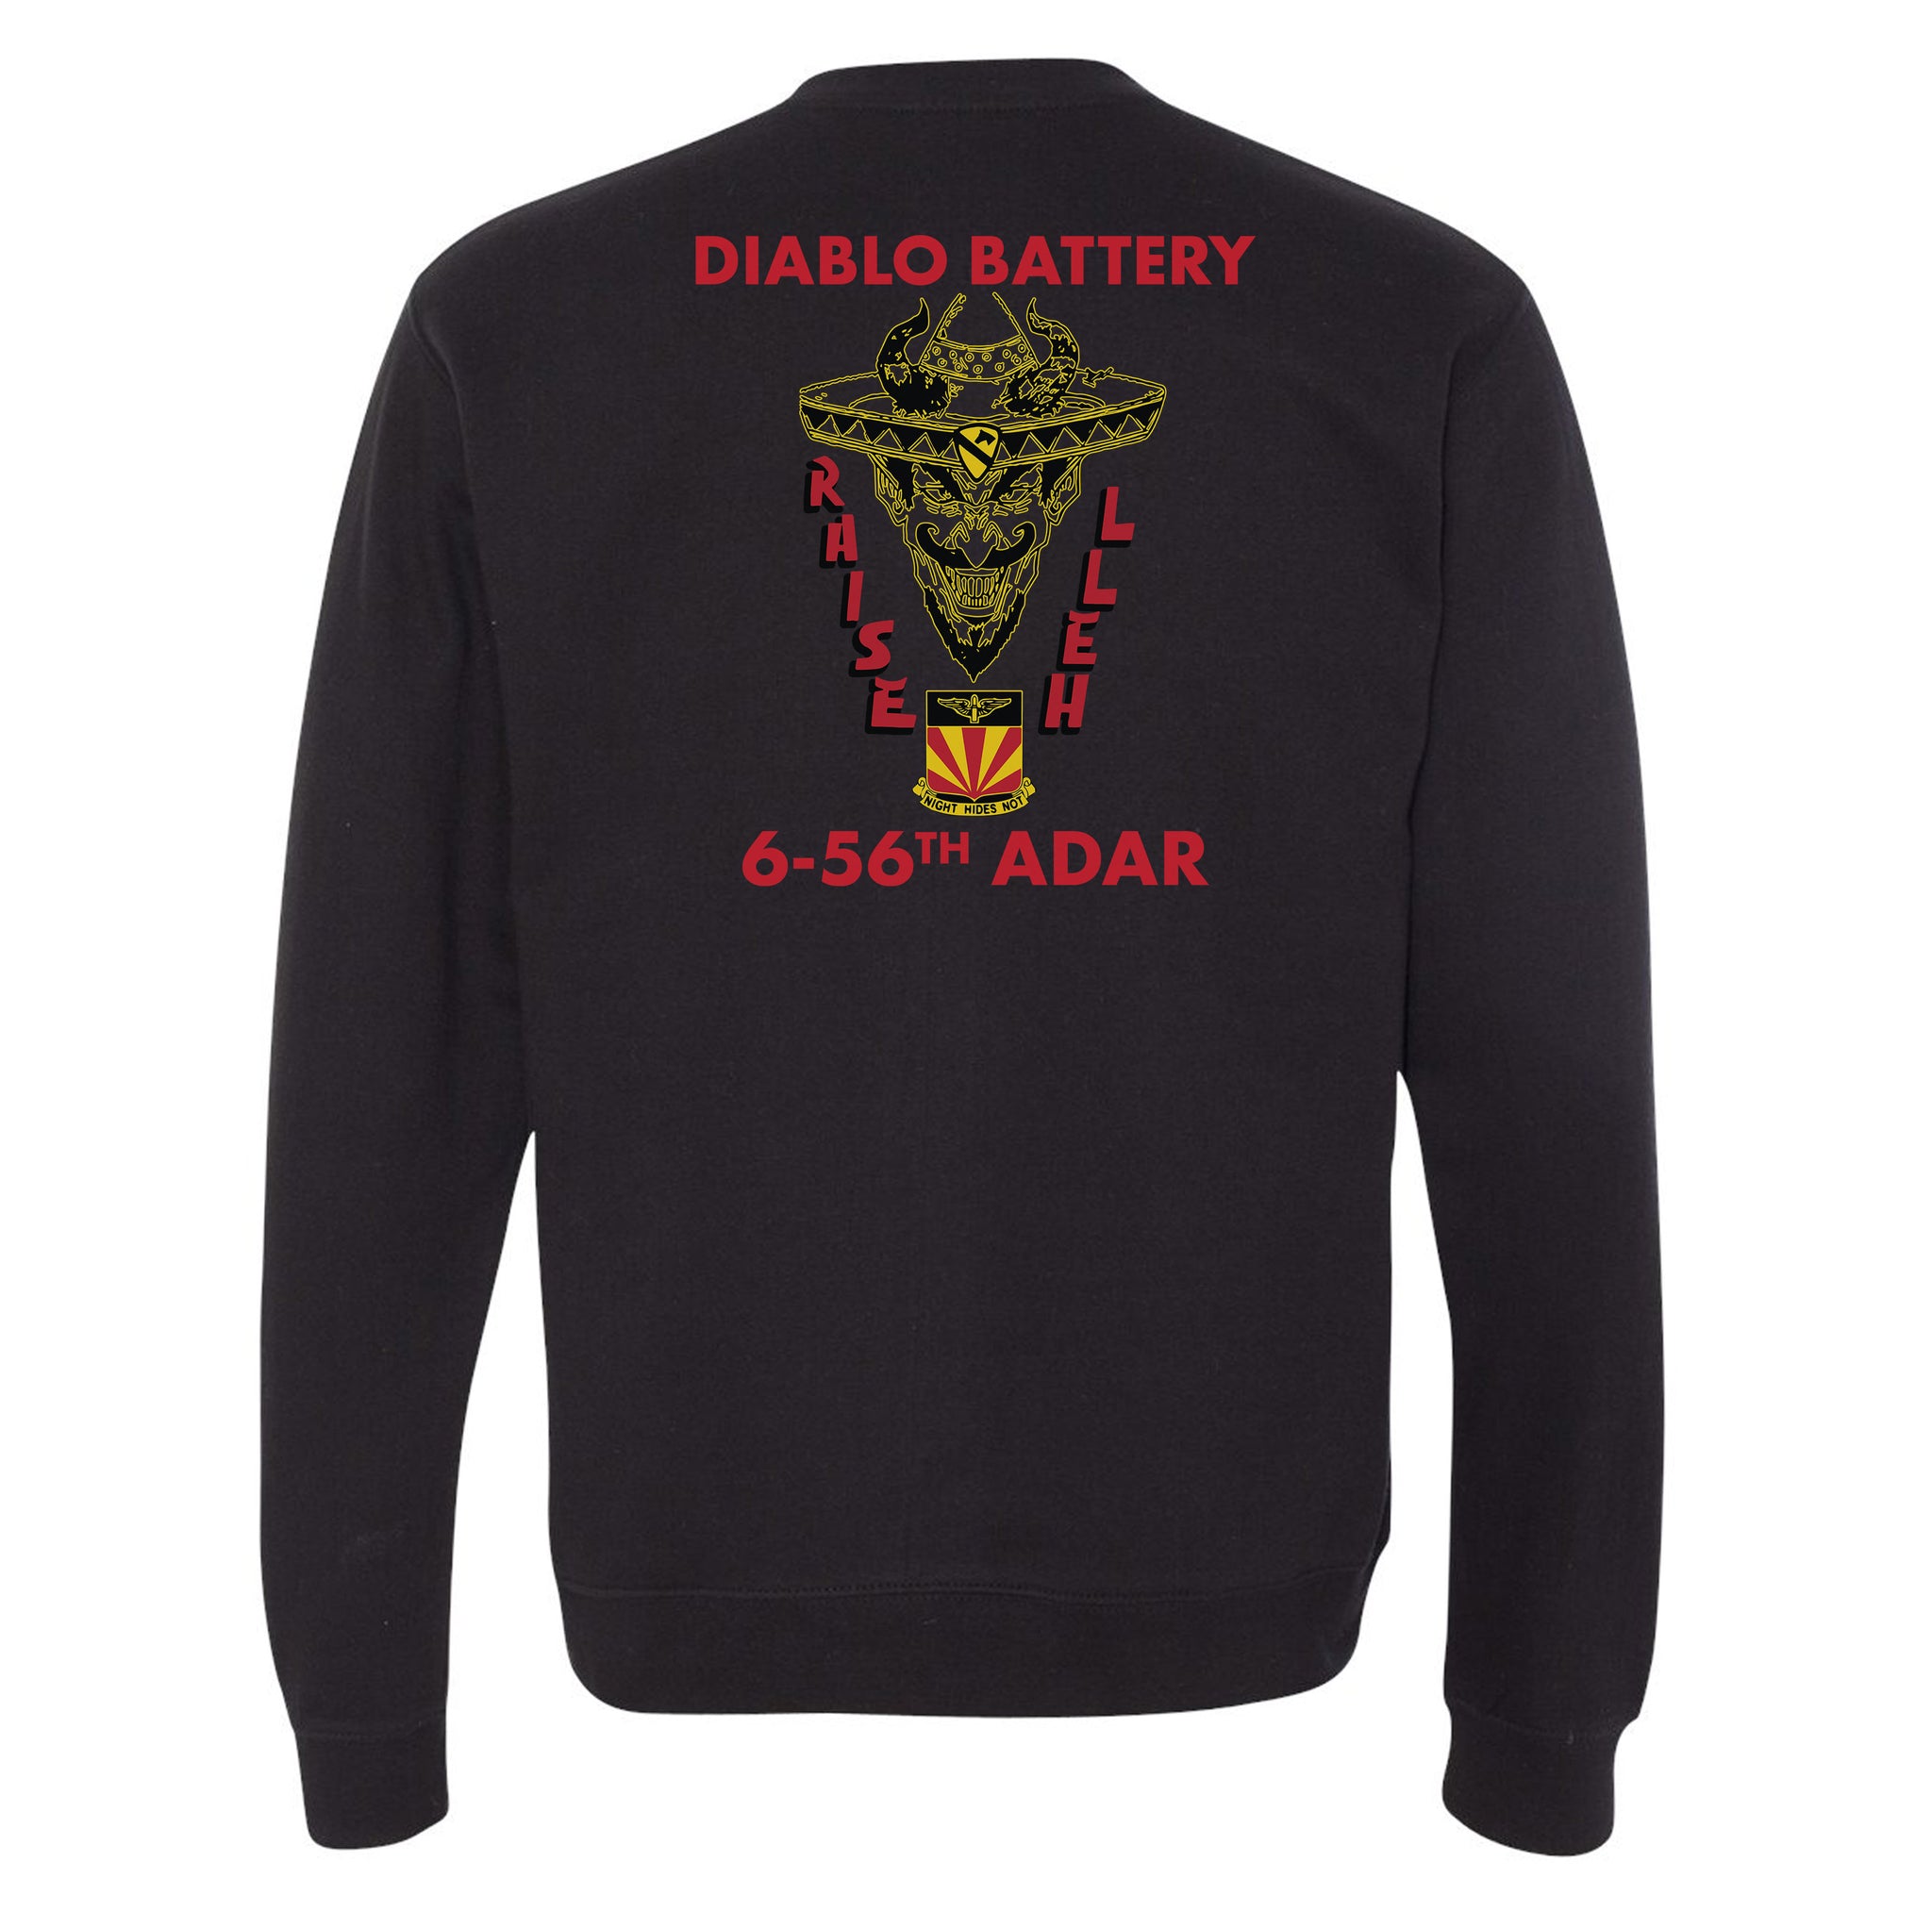 6-56 Diablo Battery Sweatshirt